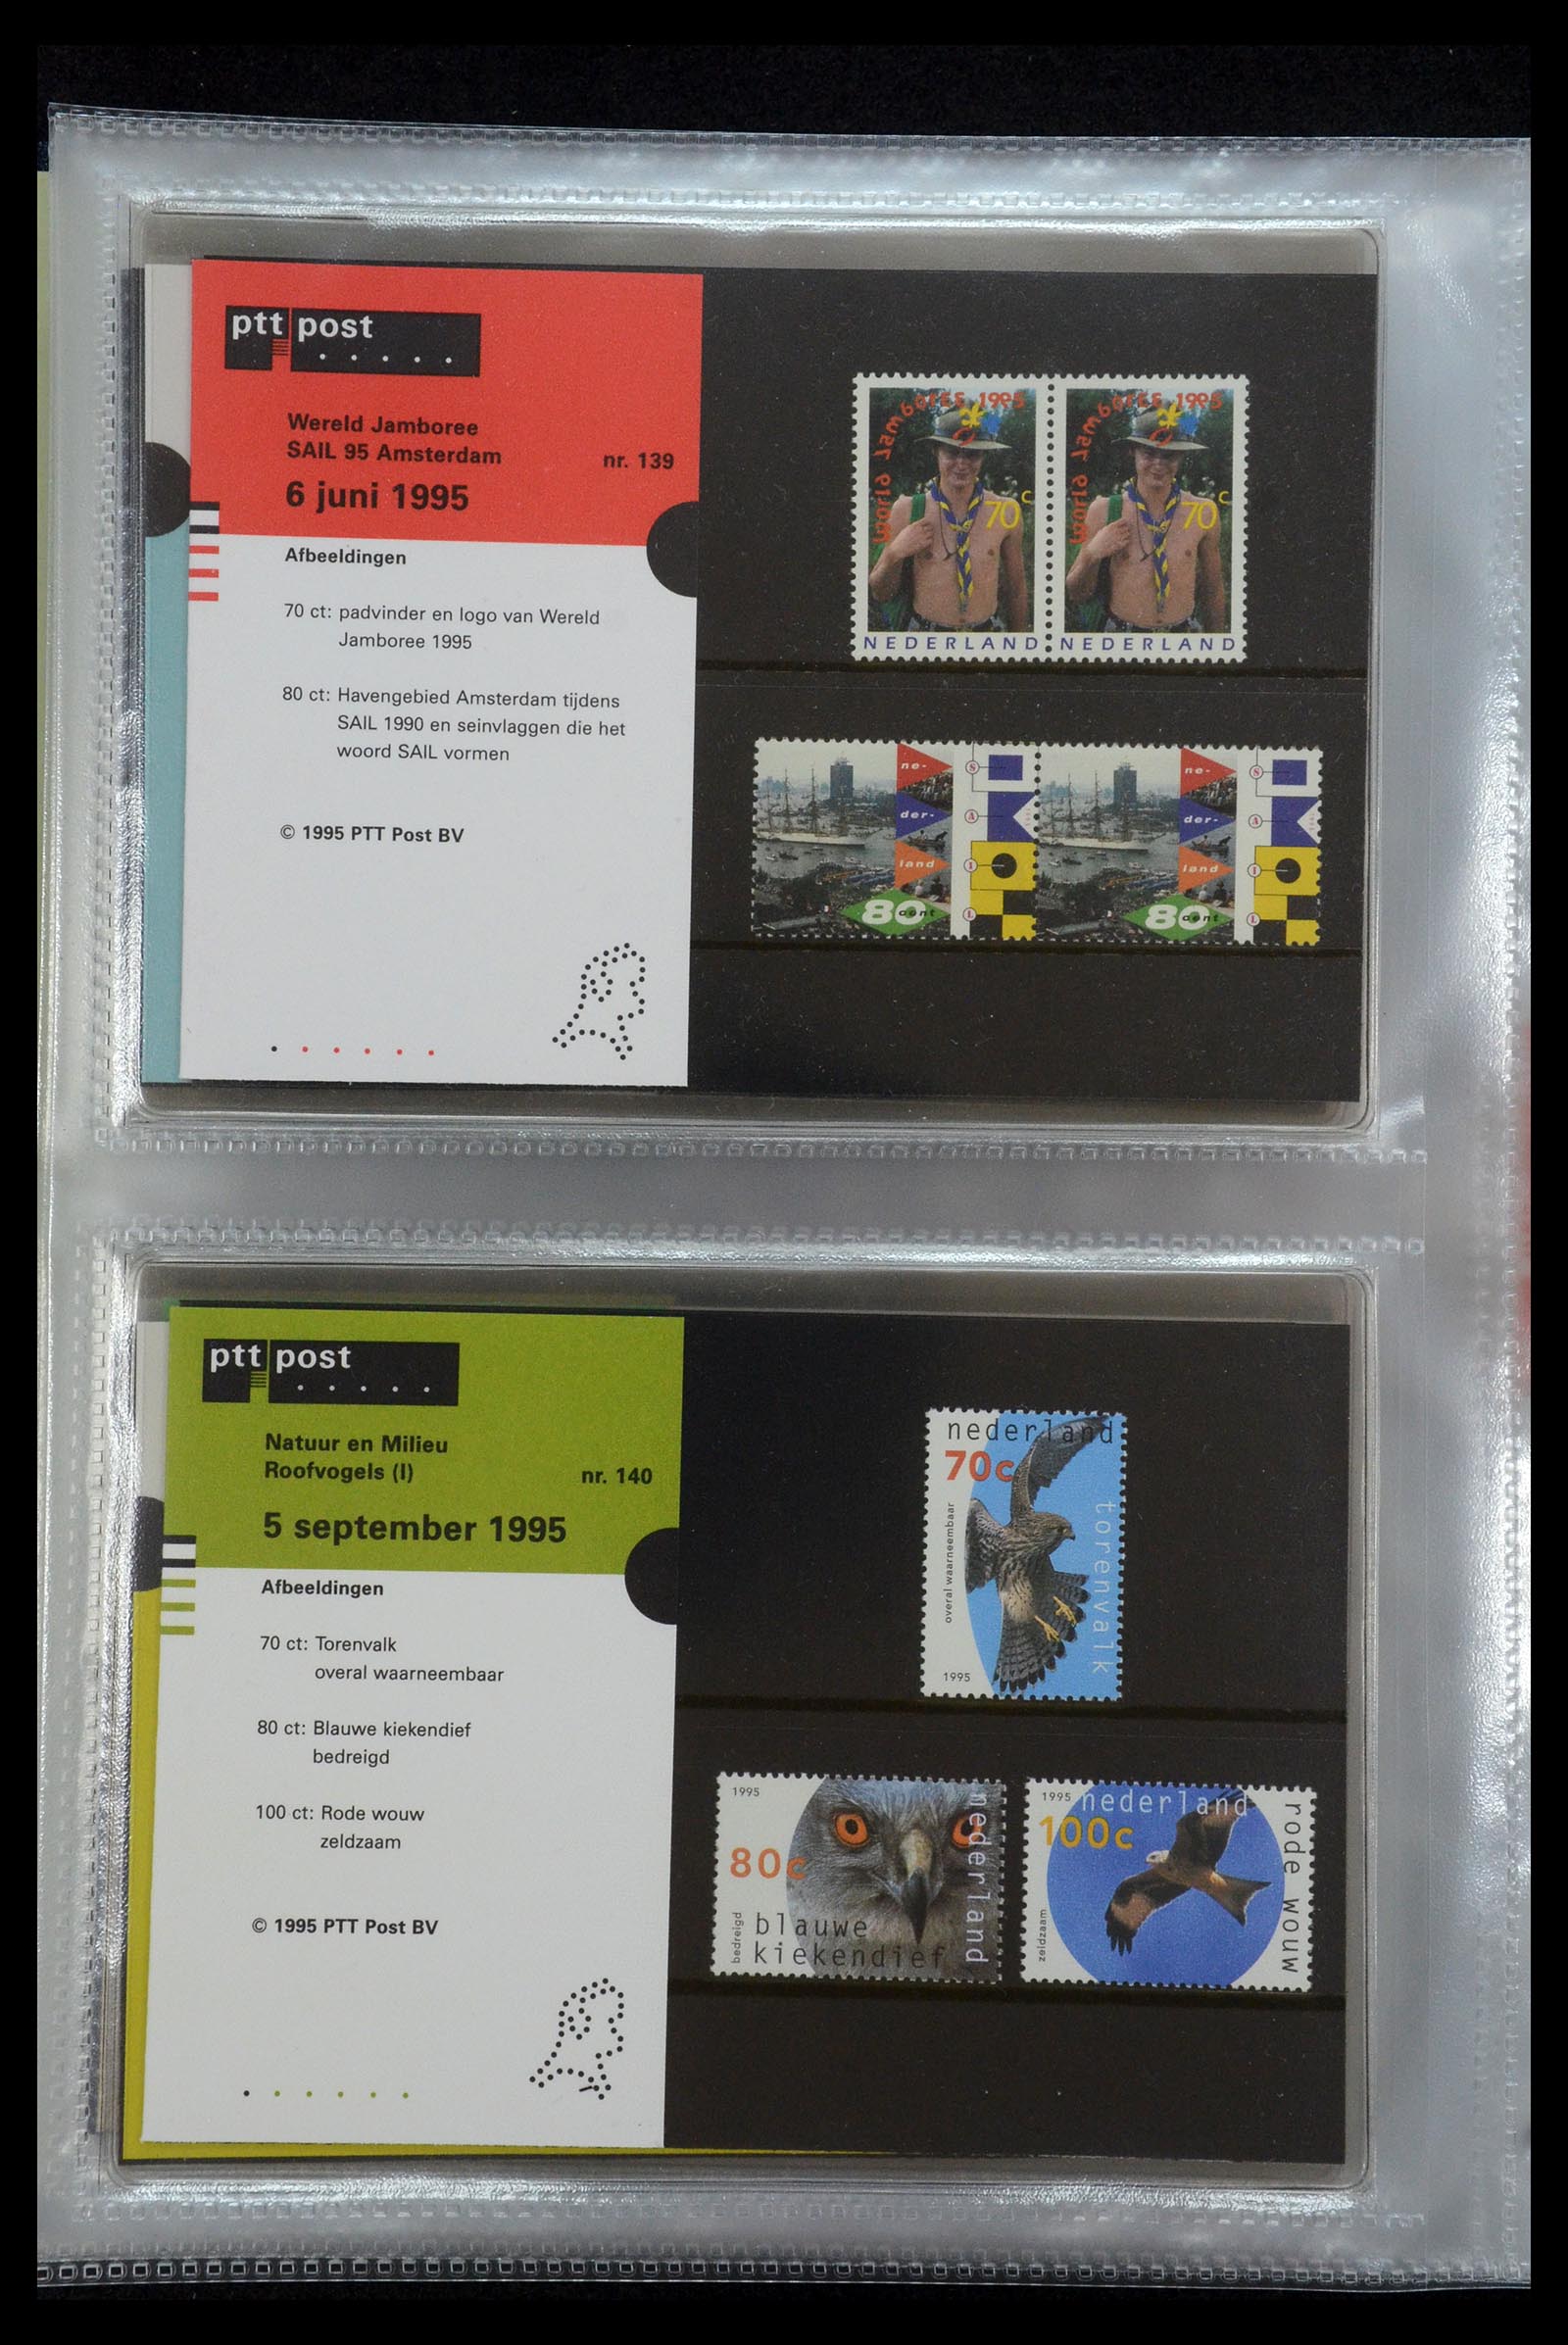 35144 072 - Stamp Collection 35144 Netherlands PTT presentation packs 1982-2021!